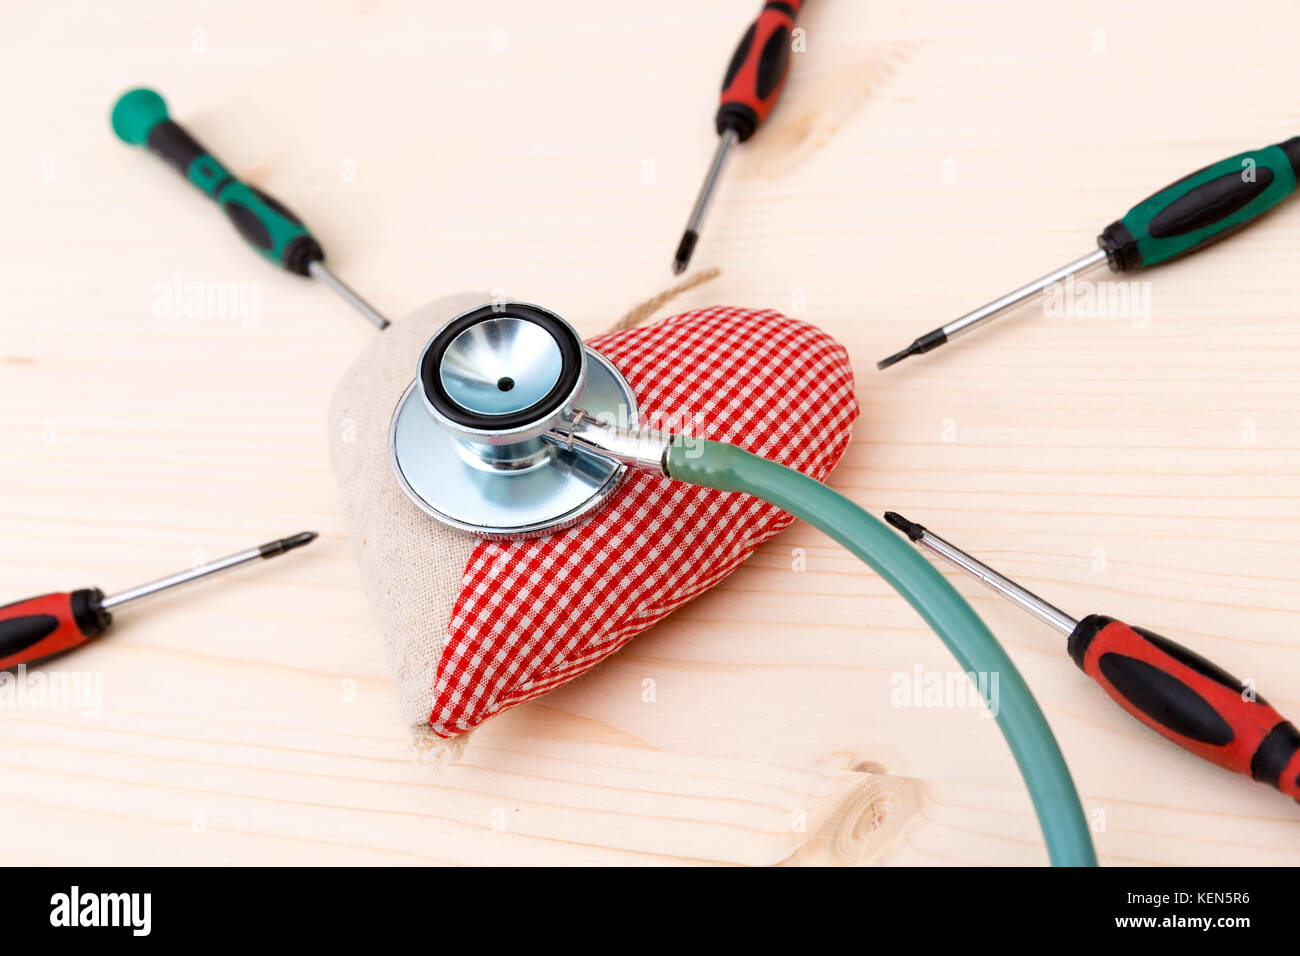 Stoff rotes Herz, Stethoskop und srewdrivers herum auf Holztisch - Gesundheit und Gesundheitswesen Konzept Stockfoto